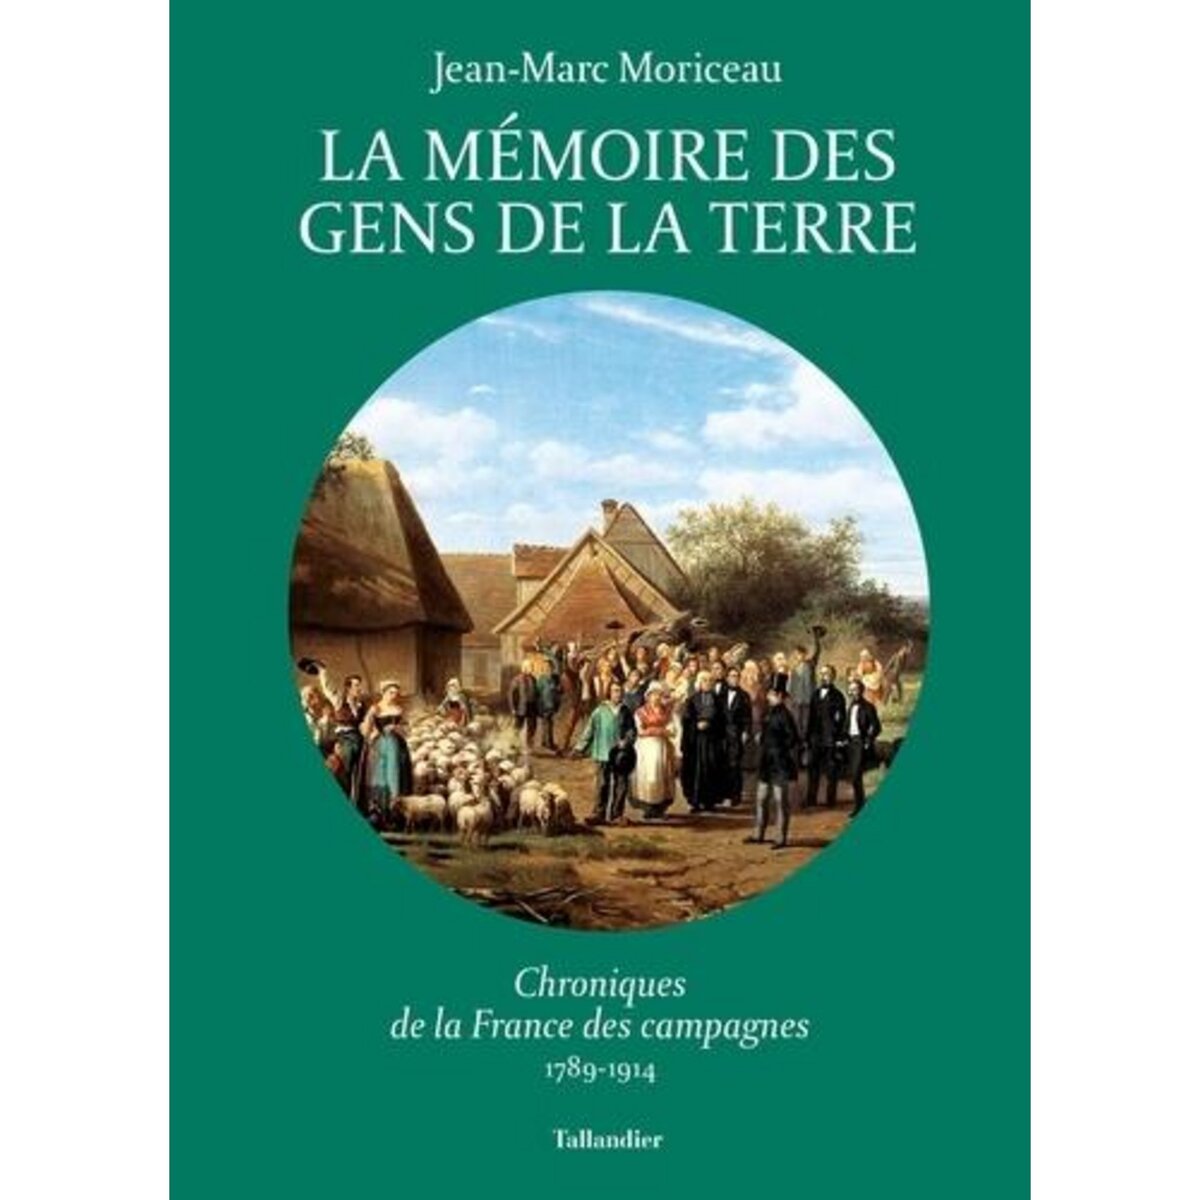  LA MEMOIRE DES GENS DE LA TERRE. CHRONIQUES DE LA FRANCE DES CAMPAGNES, 1789-1914, Moriceau Jean-Marc